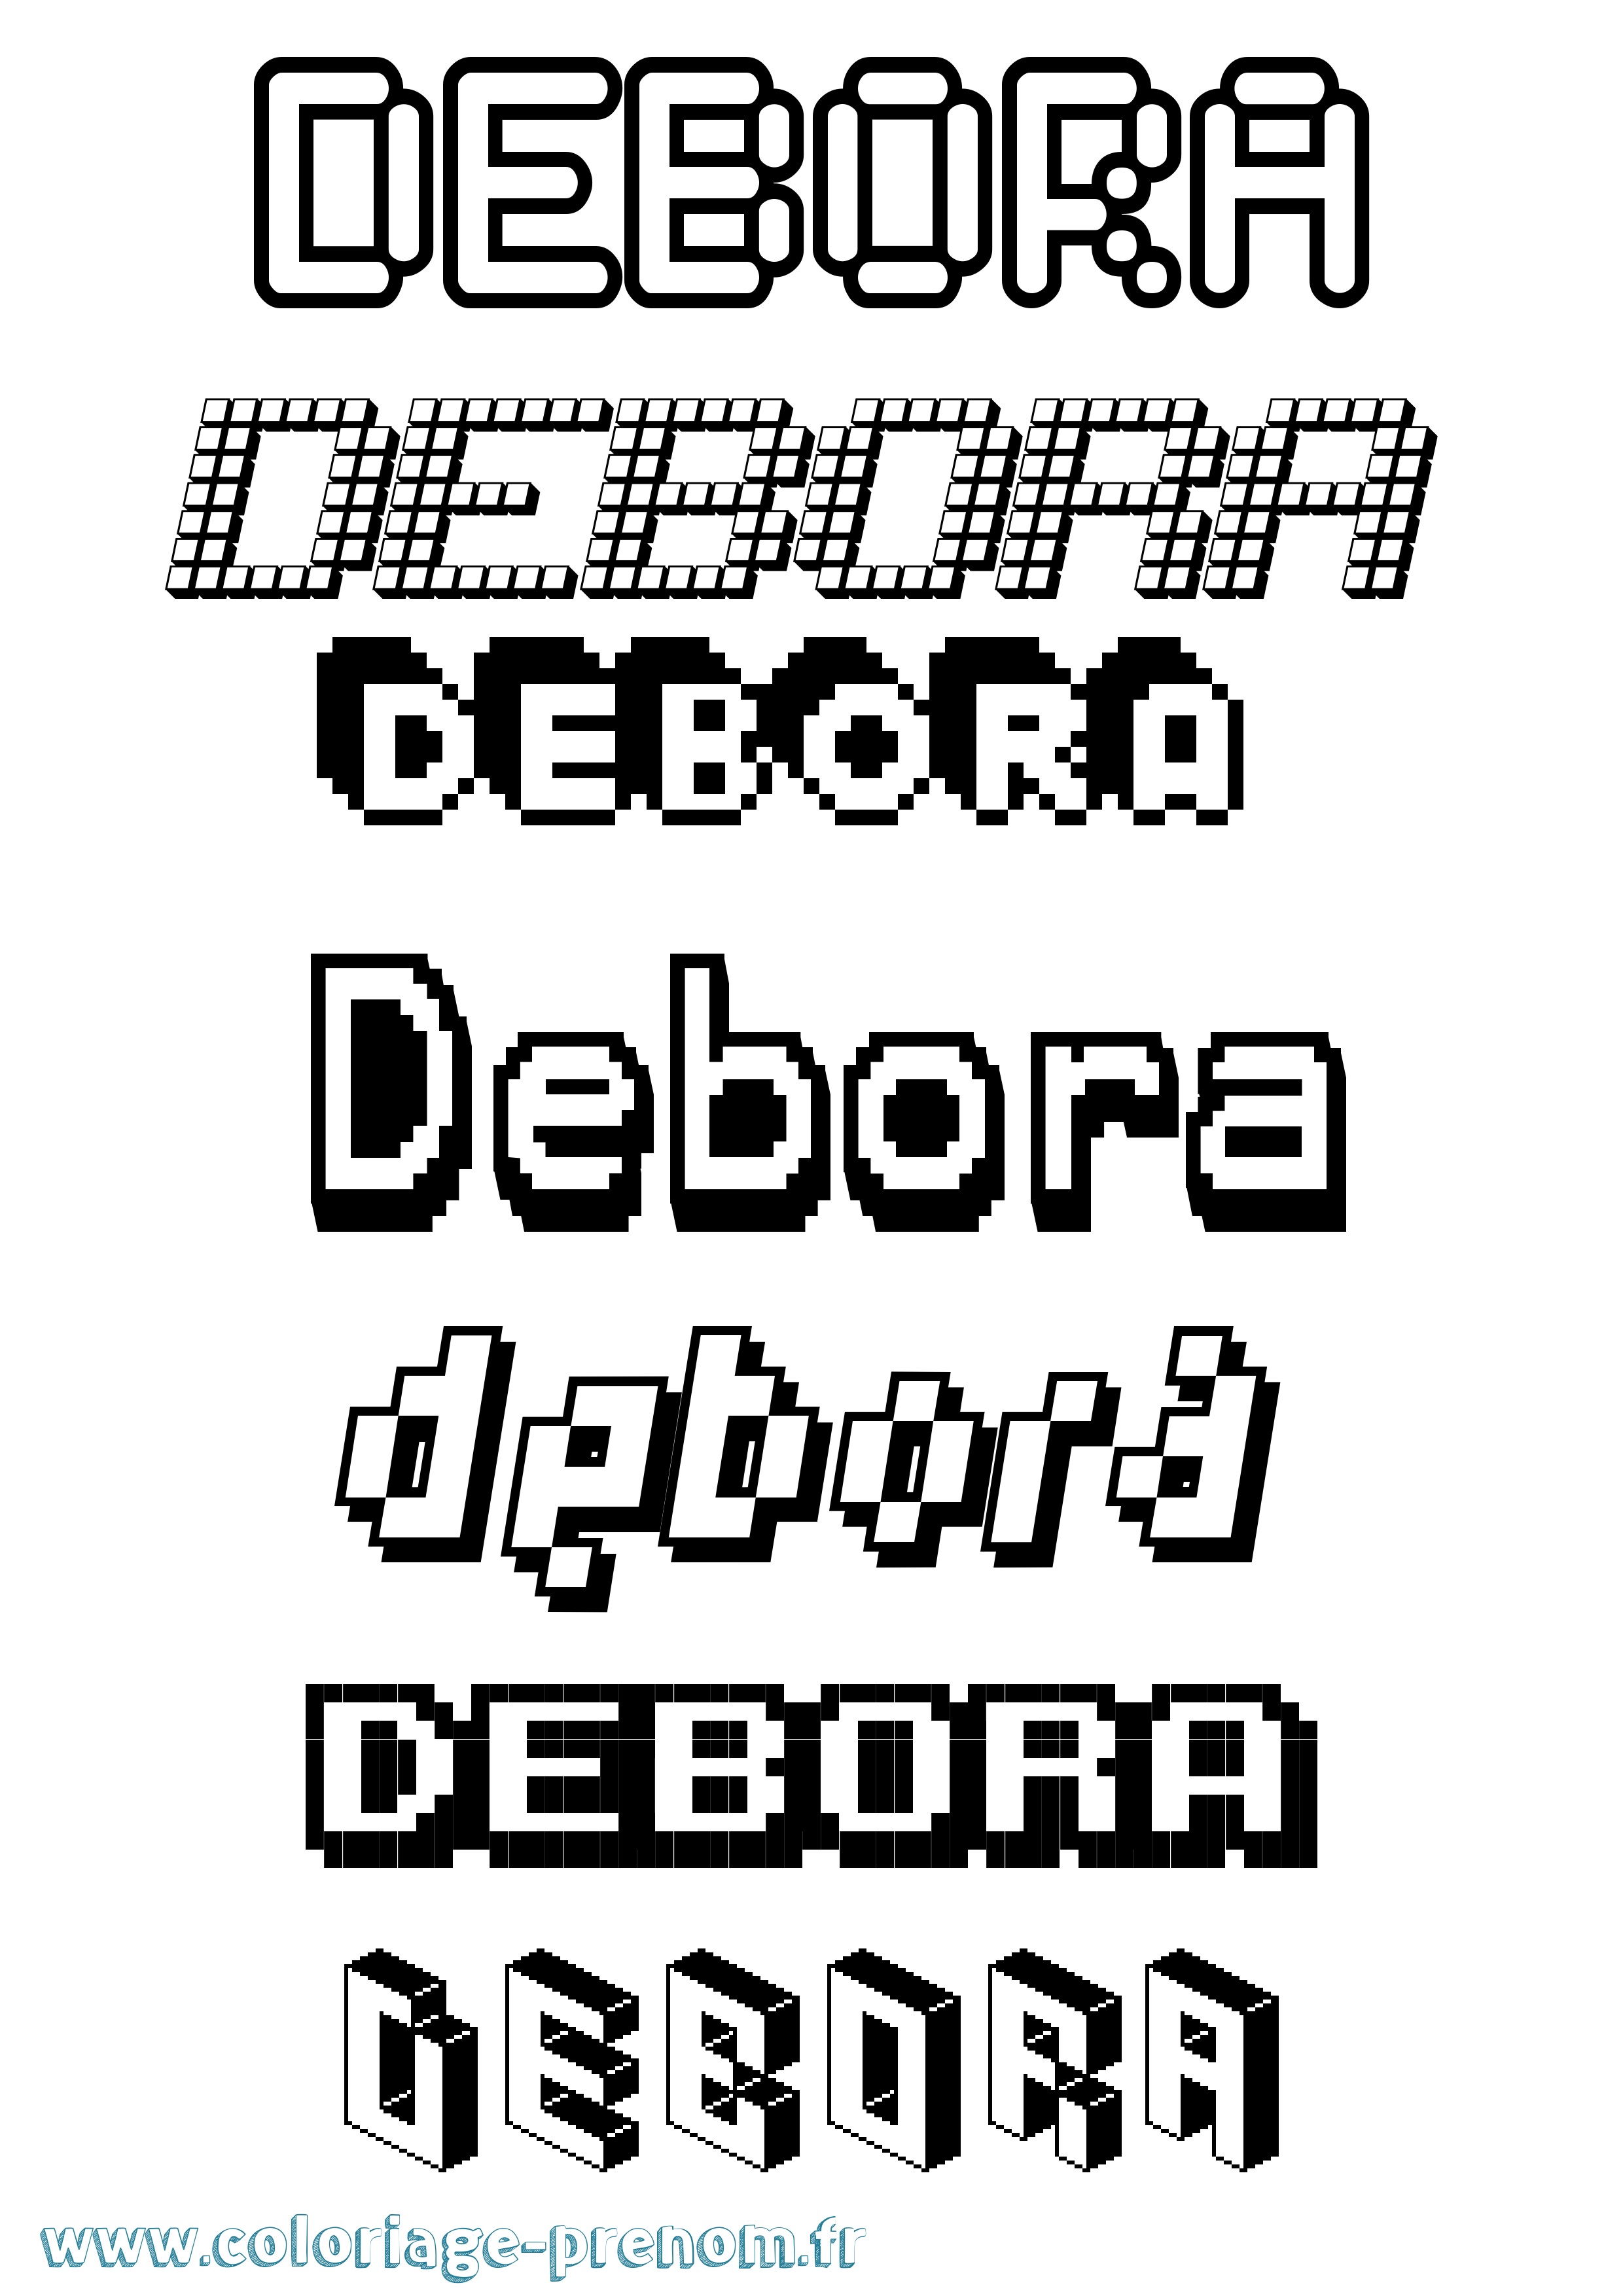 Coloriage prénom Debora Pixel